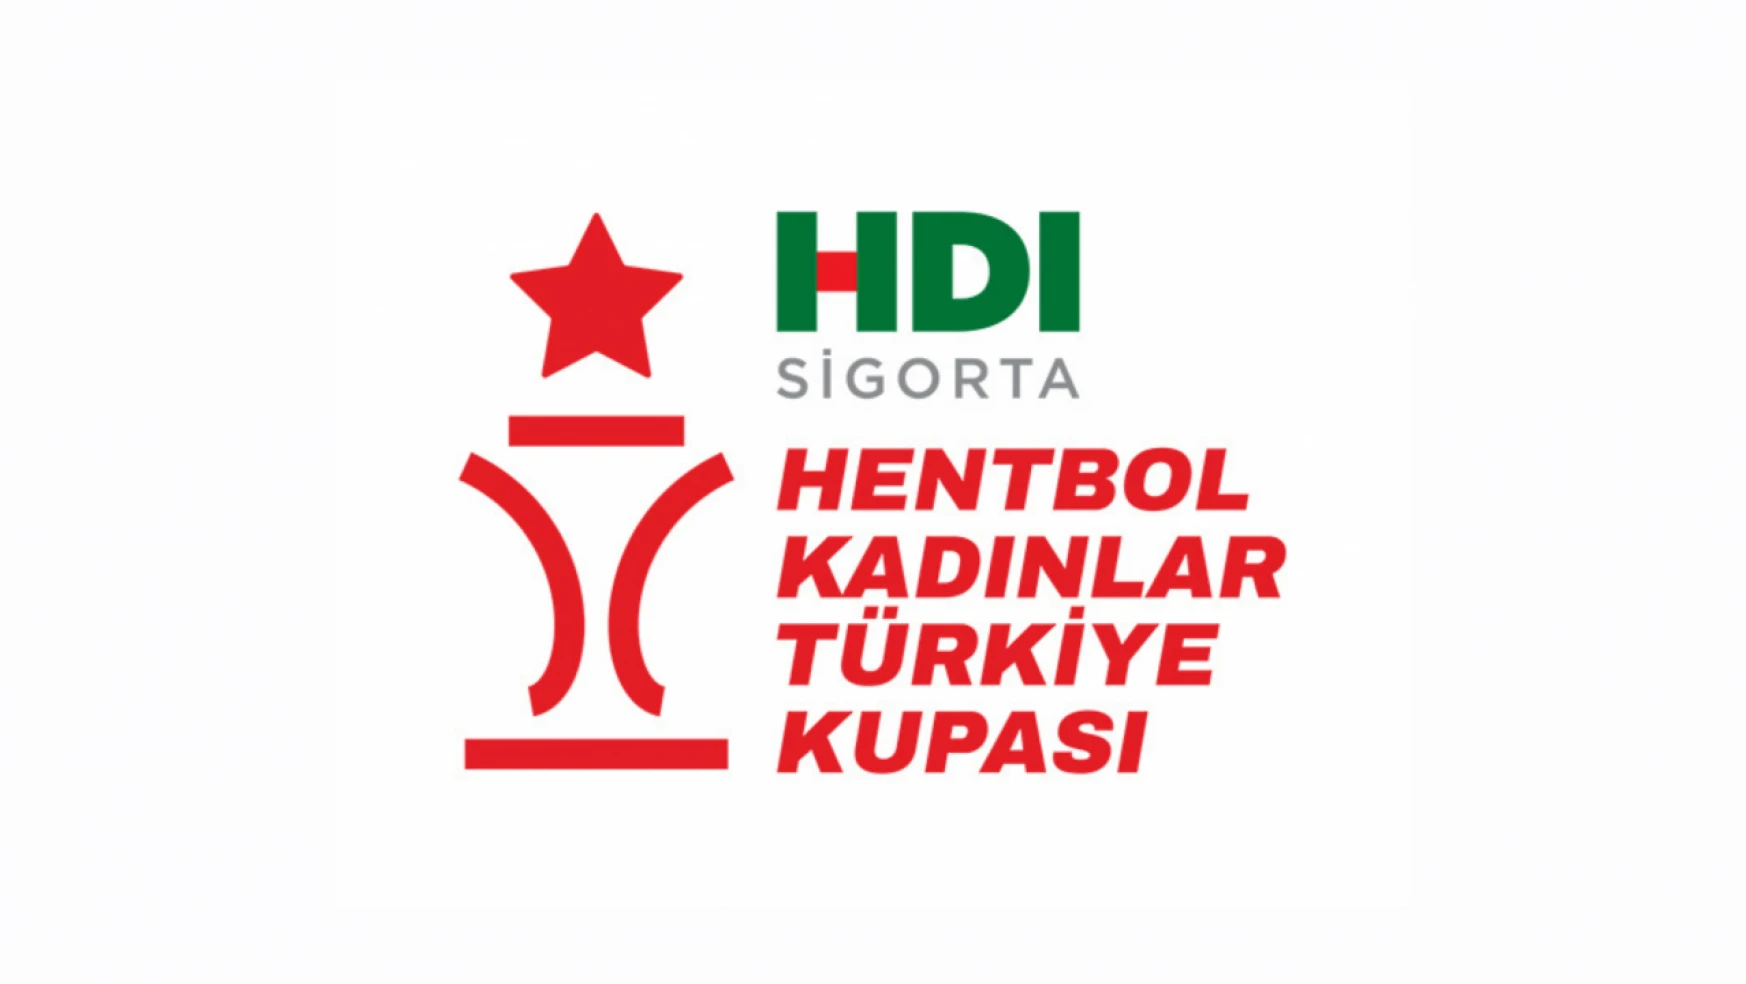 HDI Sigorta Kadınlar Türkiye Kupası Dört Final'i 4-5 Mayıs'ta